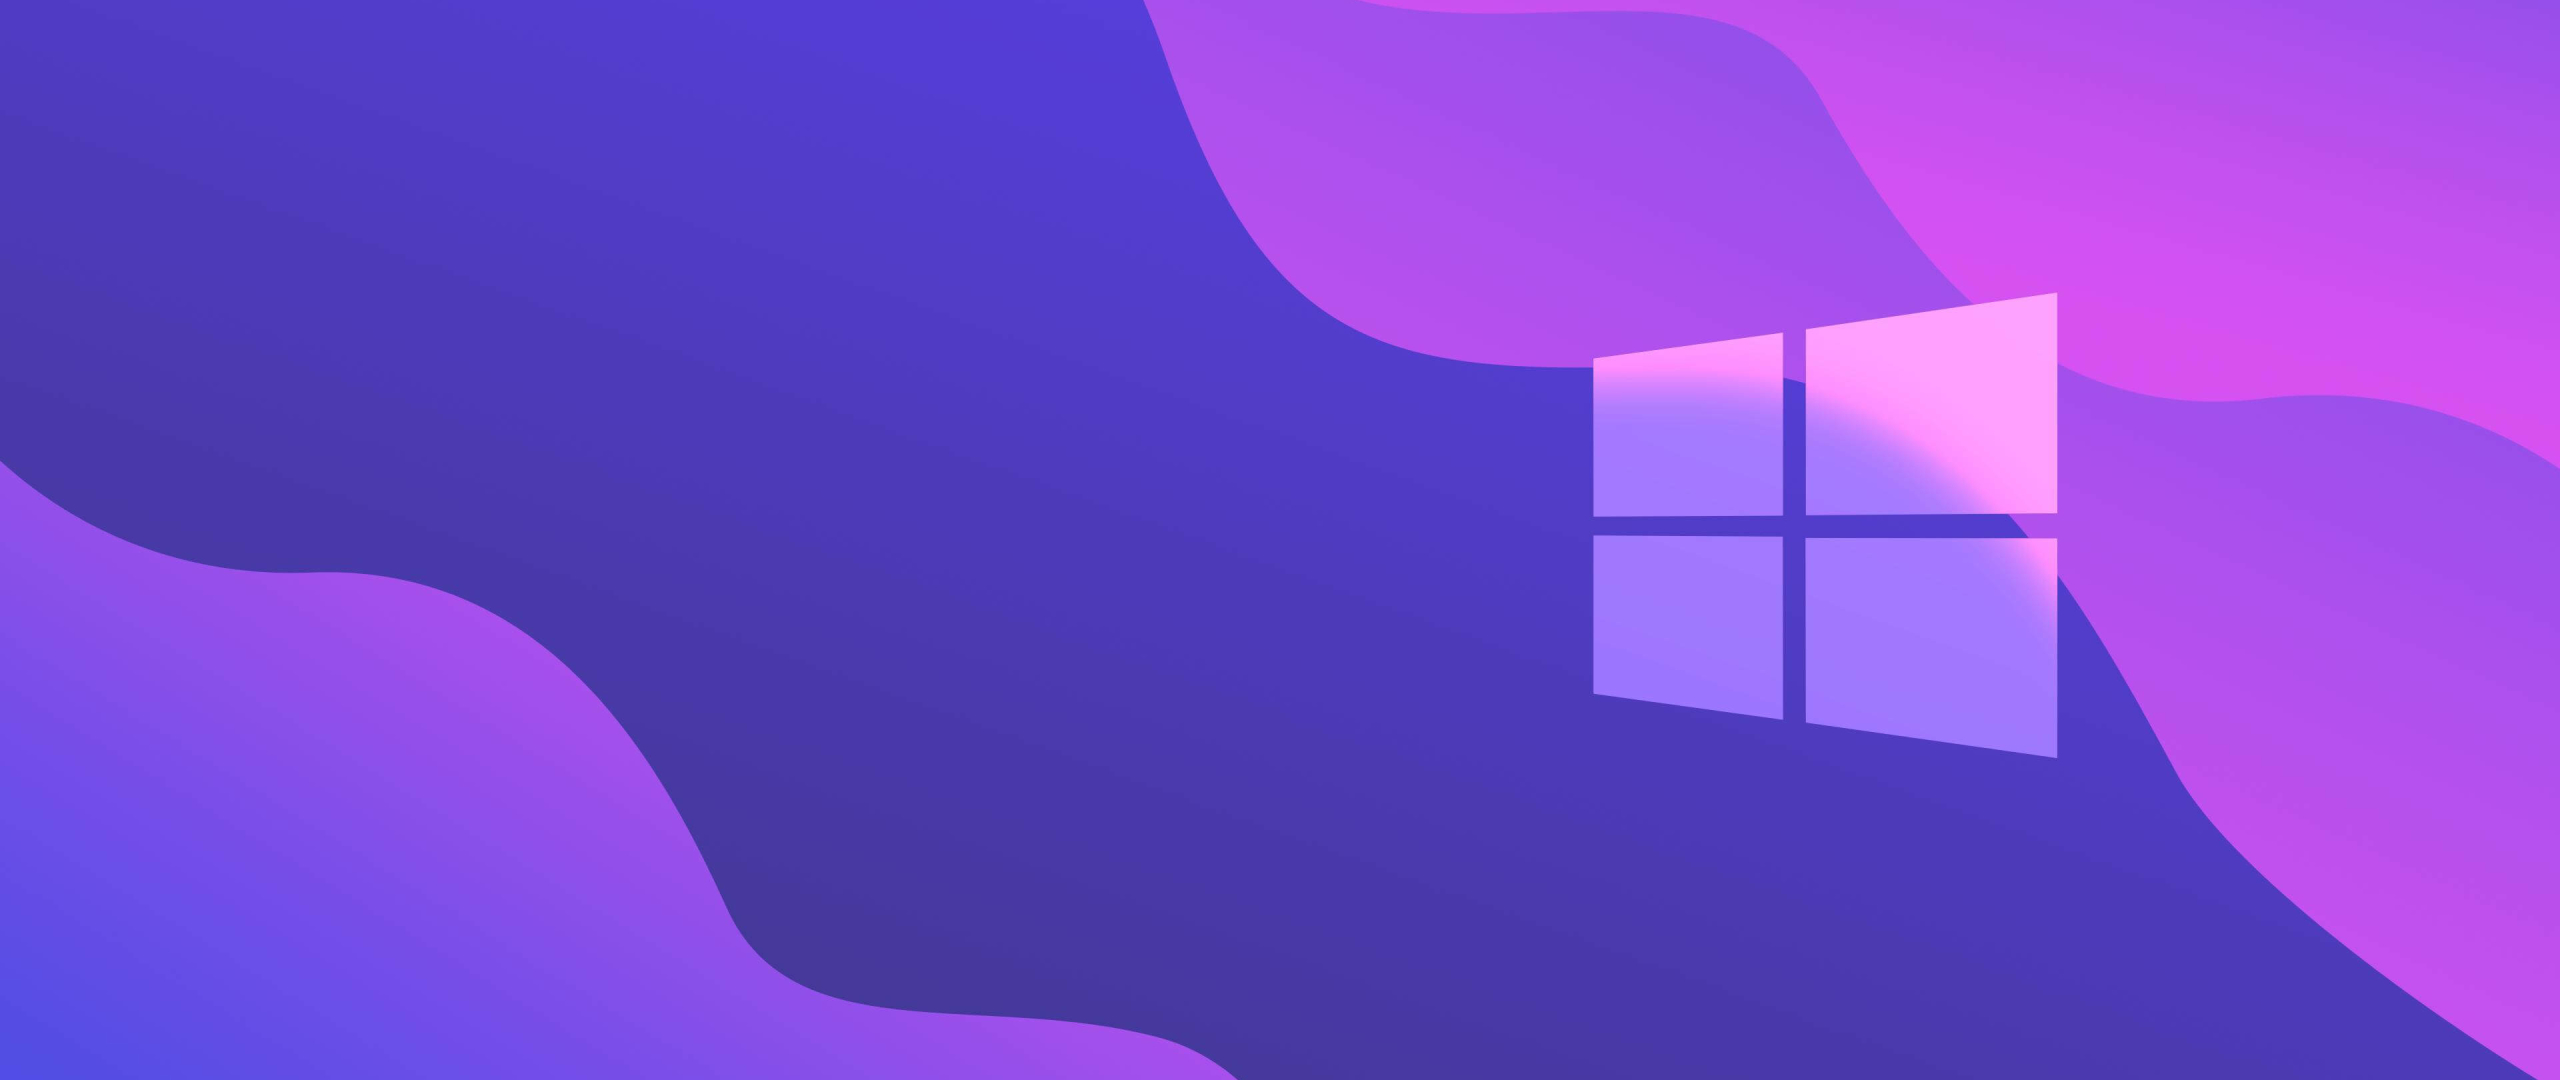 2560x1080 Windows 10 Purple Gradient 2560x1080 Resolution Wallpaper Hd